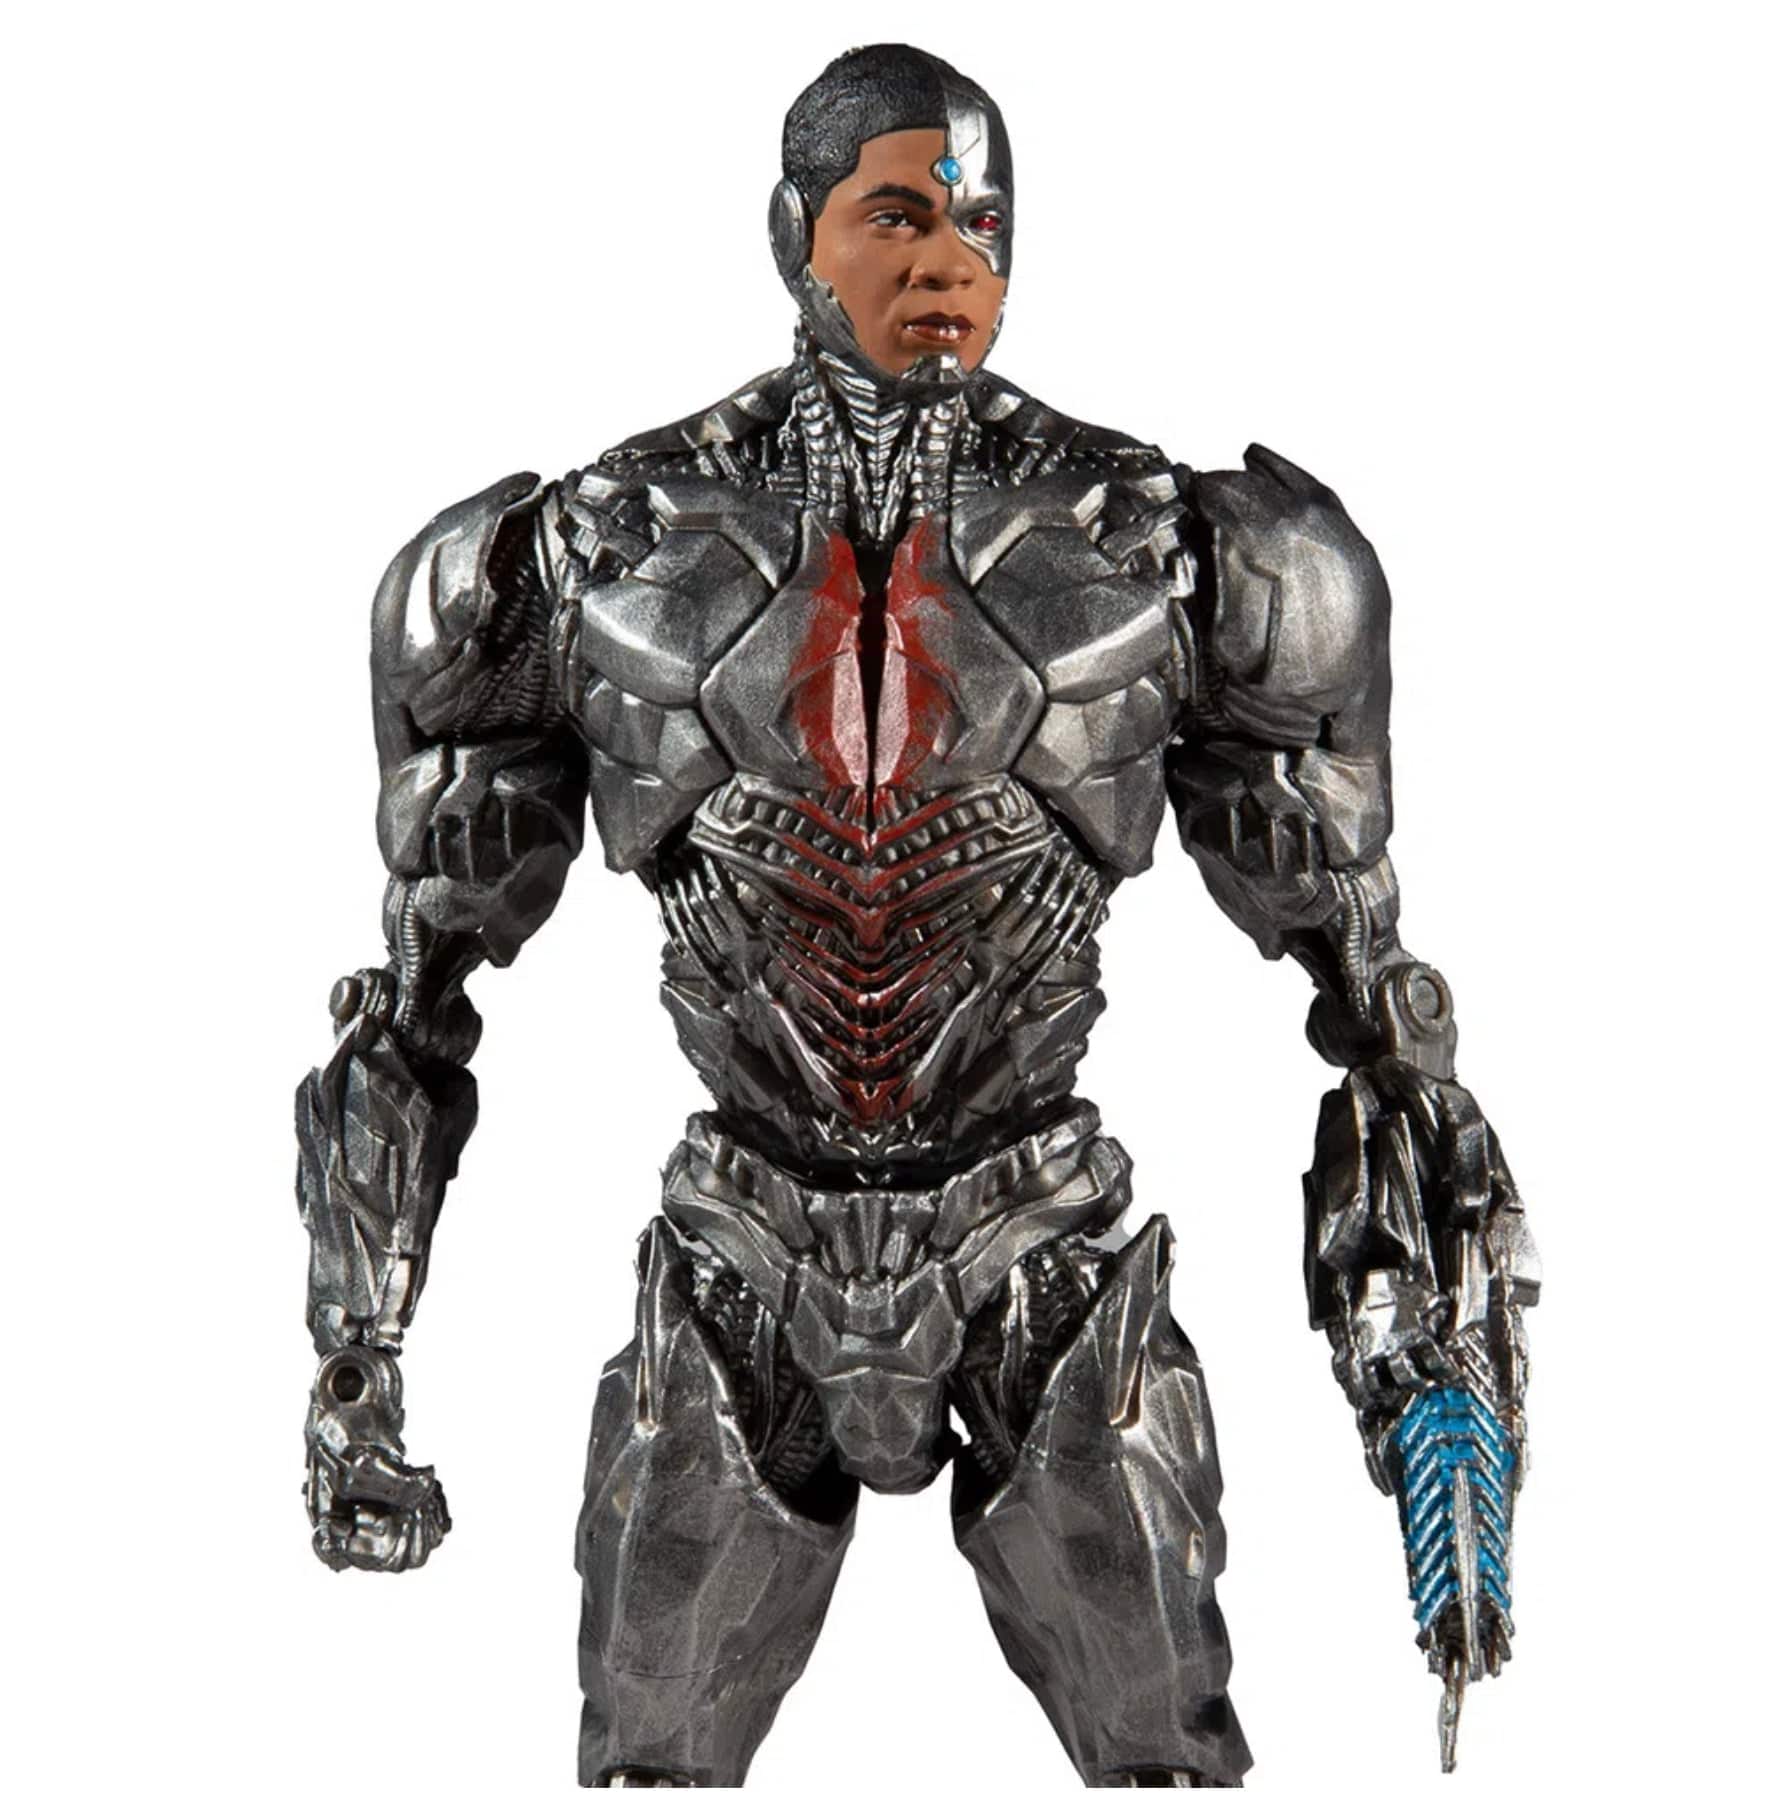 DC Justice League: Movie Action Figure: Cyborg